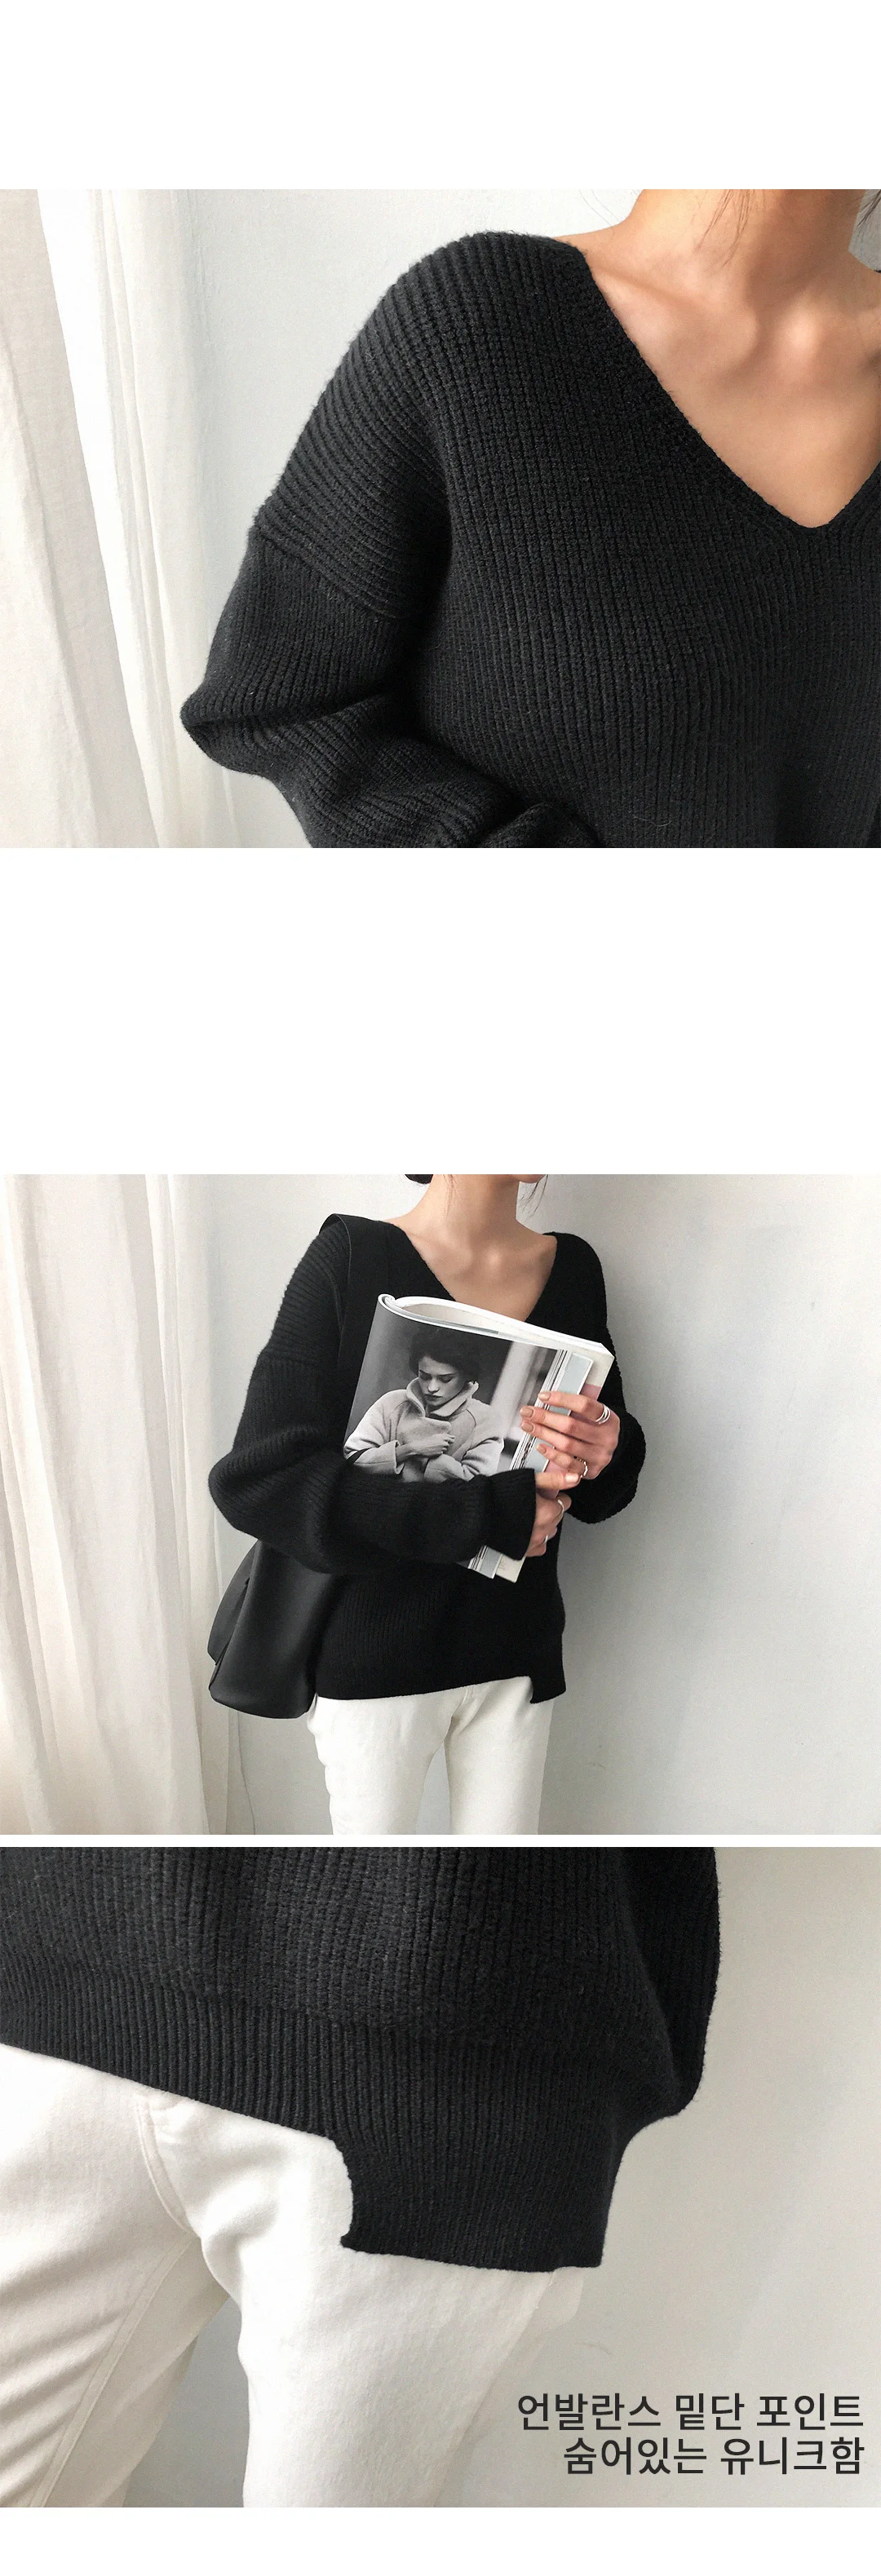 Новинка, модный Повседневный пуловер в Корейском стиле, осенне-зимние женские свитера с v-образным вырезом, минималистичные топы, вязаные однотонные 7290 50